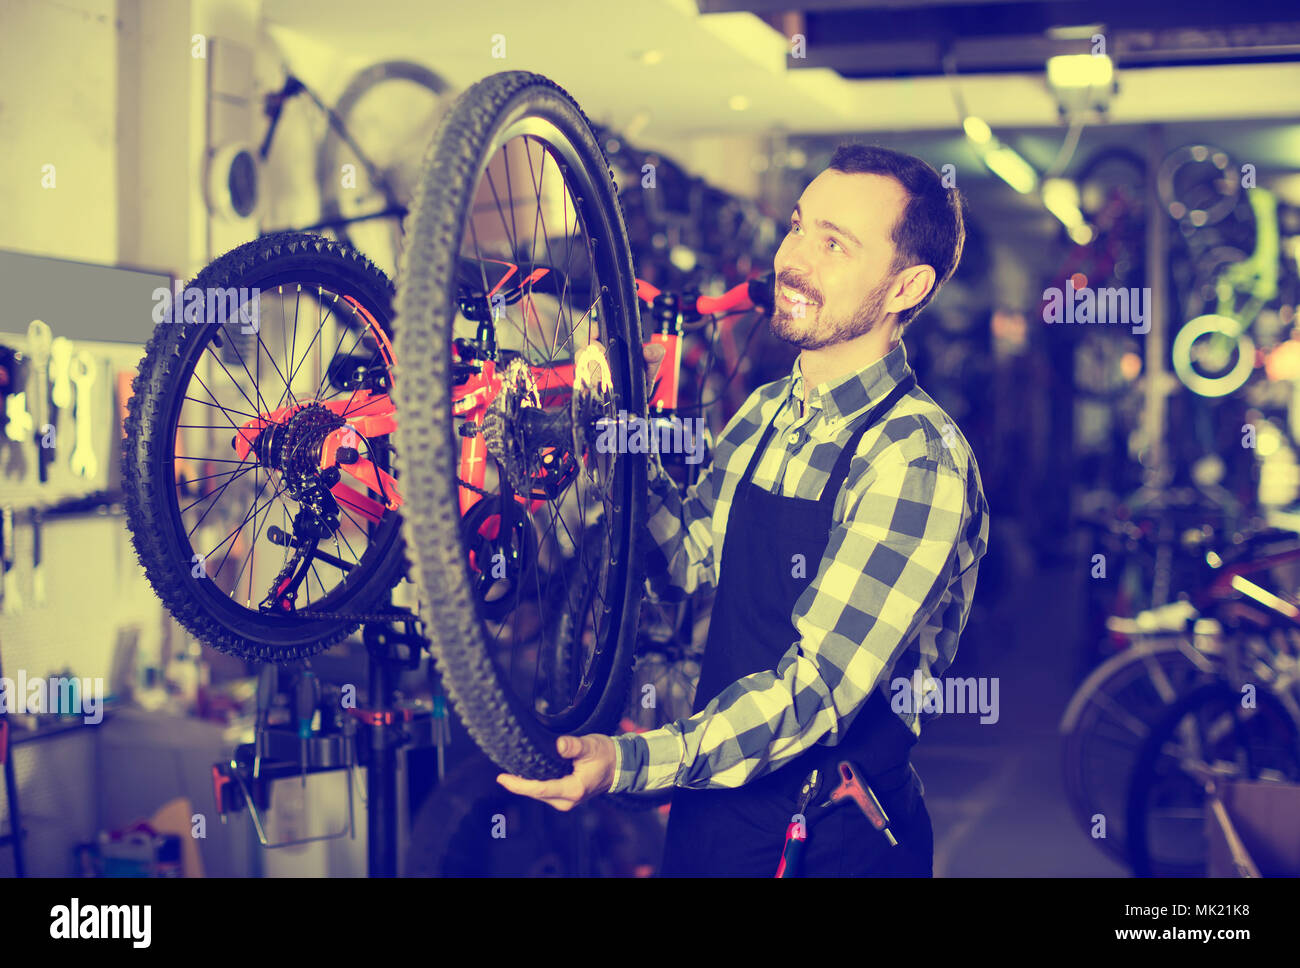 Hombre sonriente maestro establece una rueda de bicicleta en su taller Foto de stock